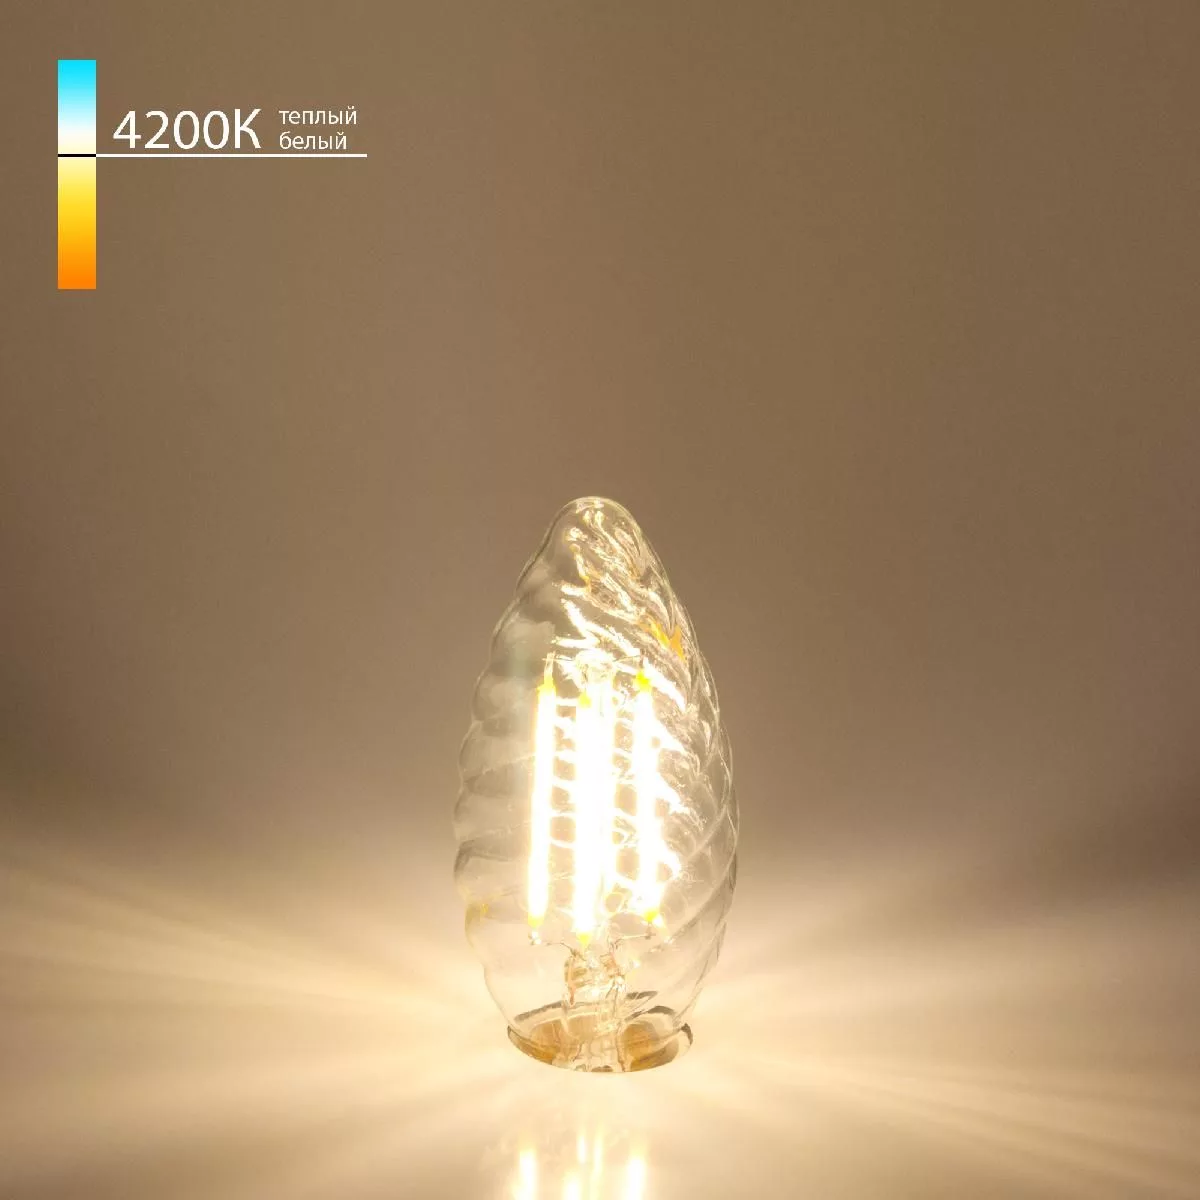 Филаментная лампа Свеча витая" 7 Вт 4200K E14 Elektrostandard" BL129